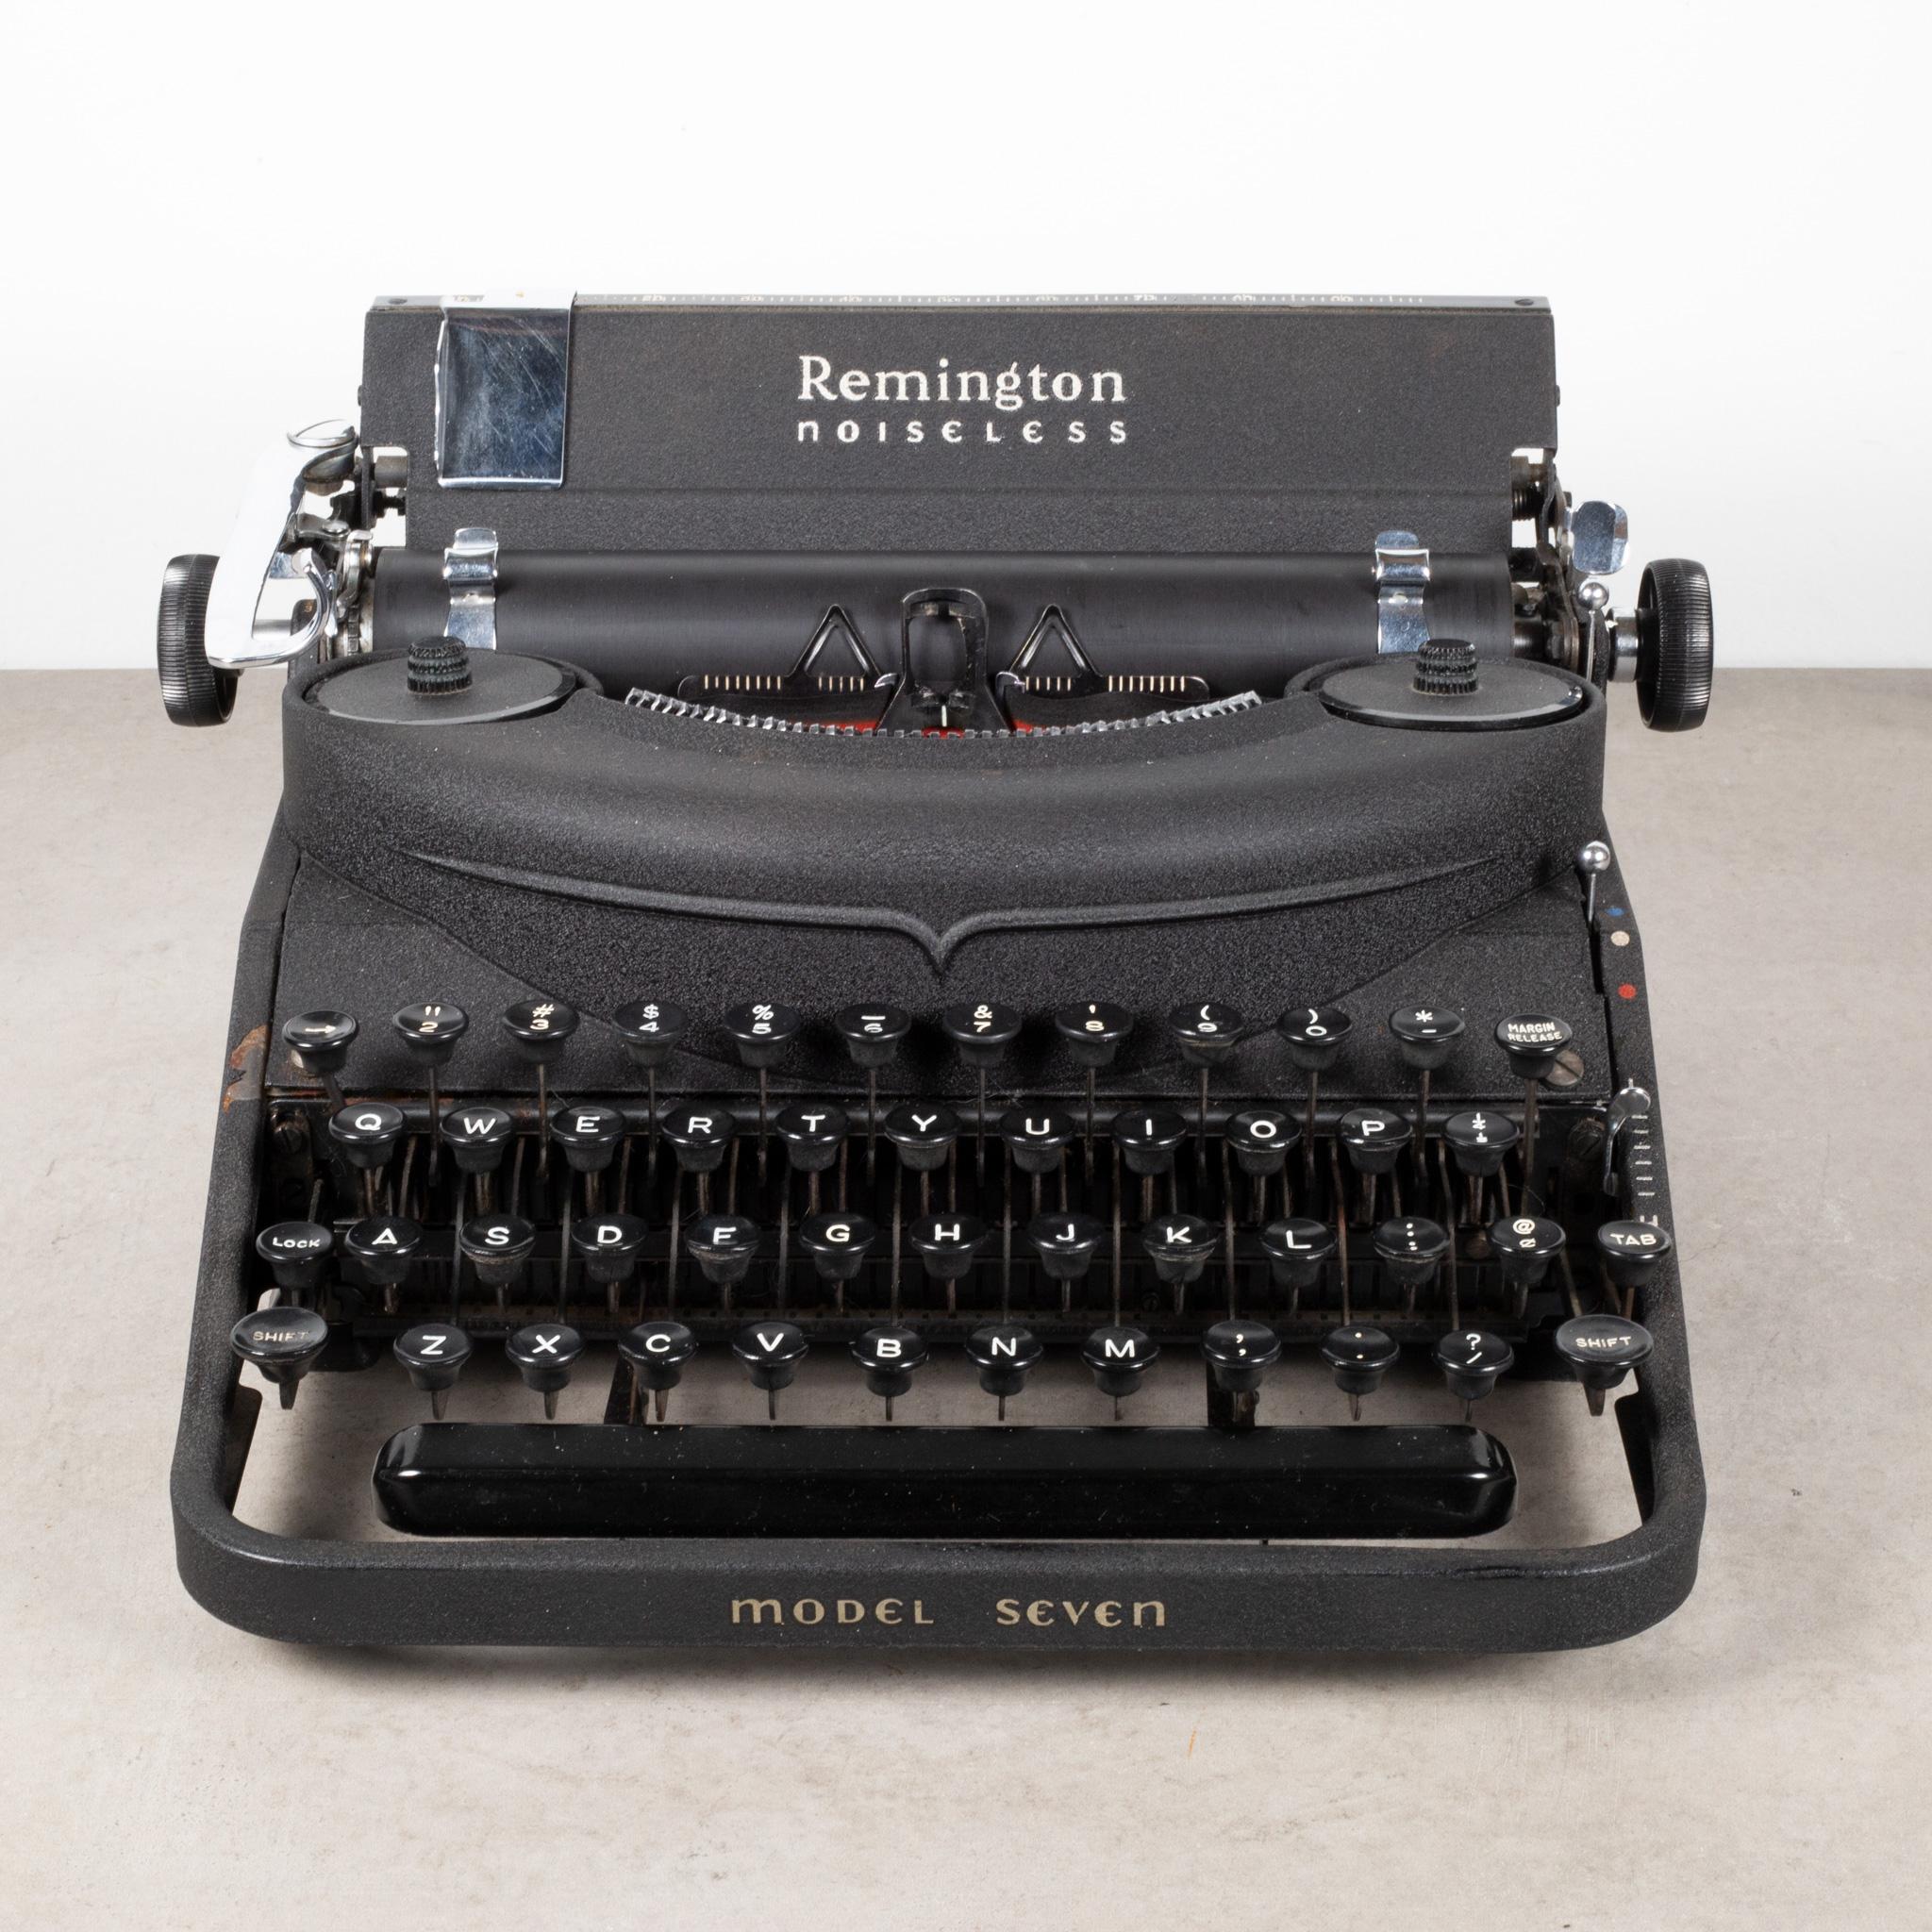 remington portable typewriter